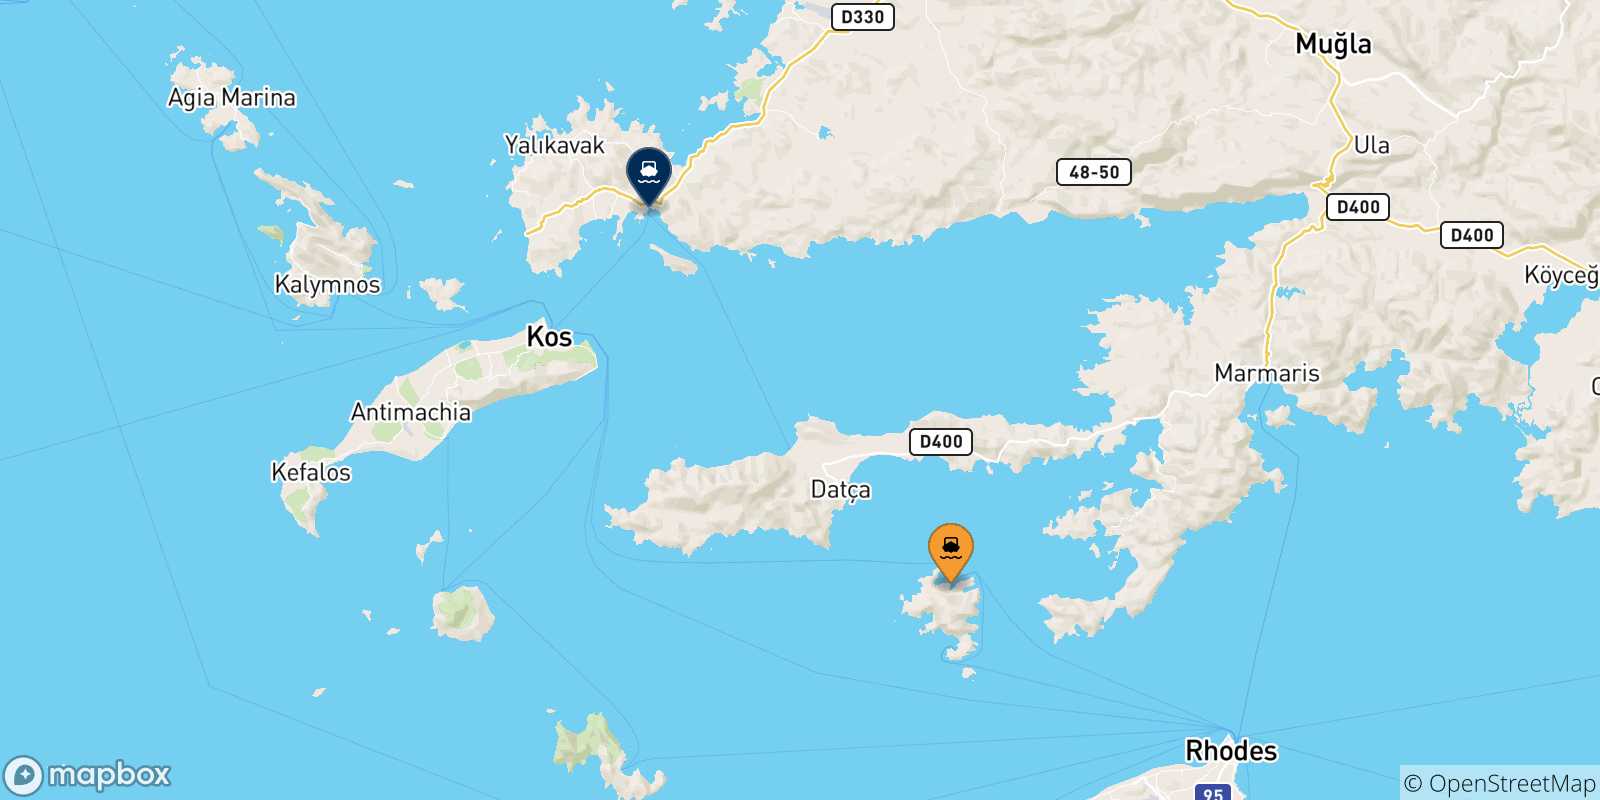 Mappa delle possibili rotte tra Symi e la Turchia